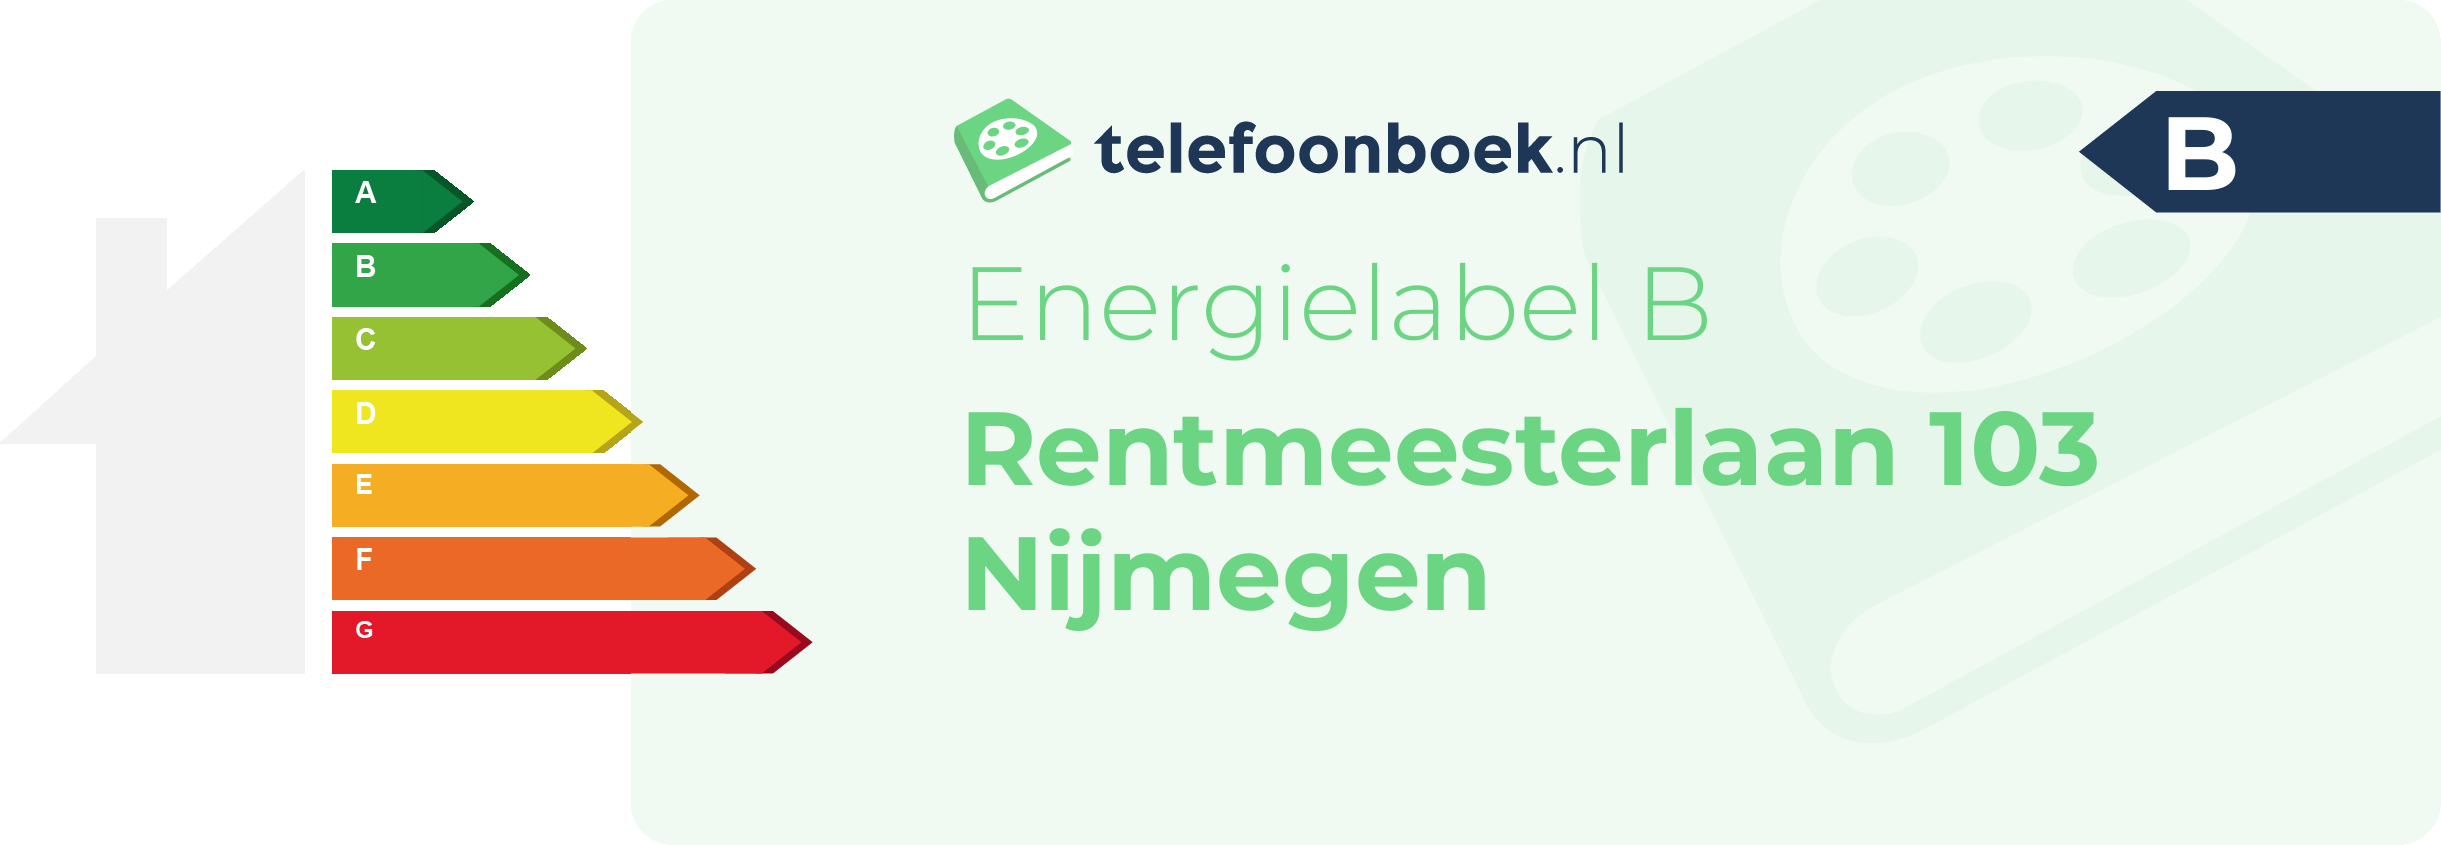 Energielabel Rentmeesterlaan 103 Nijmegen